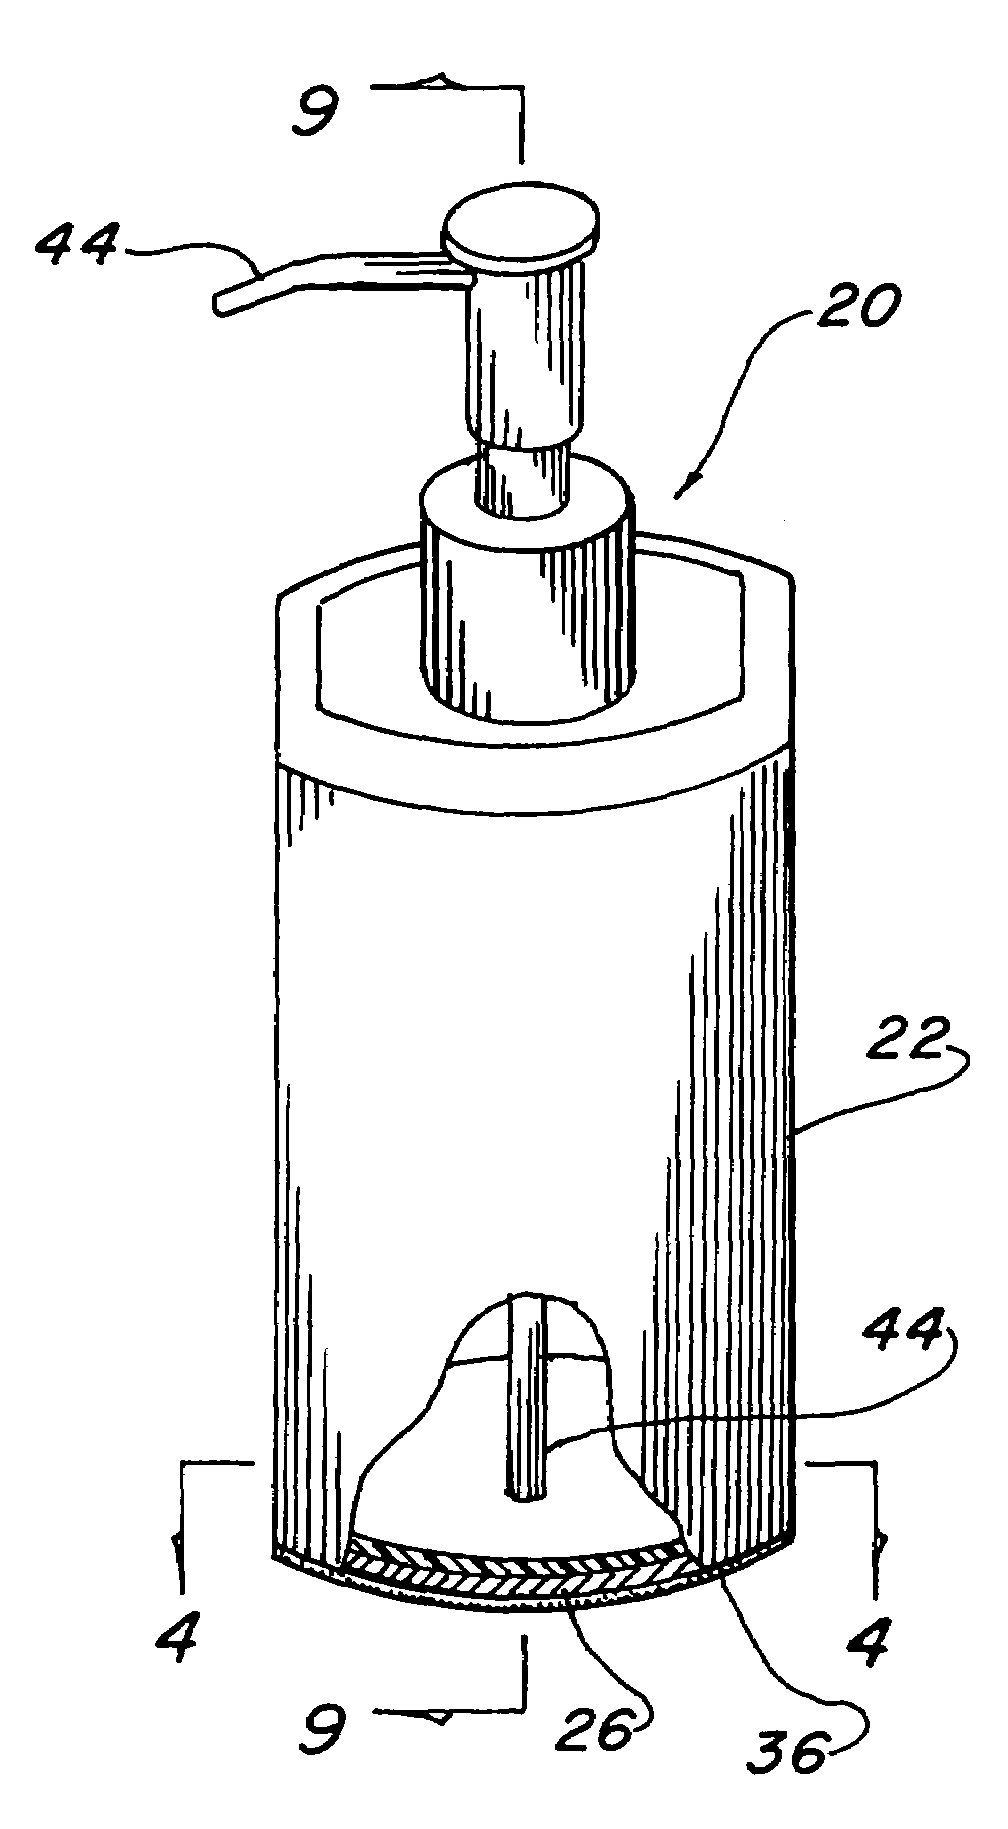 Plastic lined metallic liquid dispenser